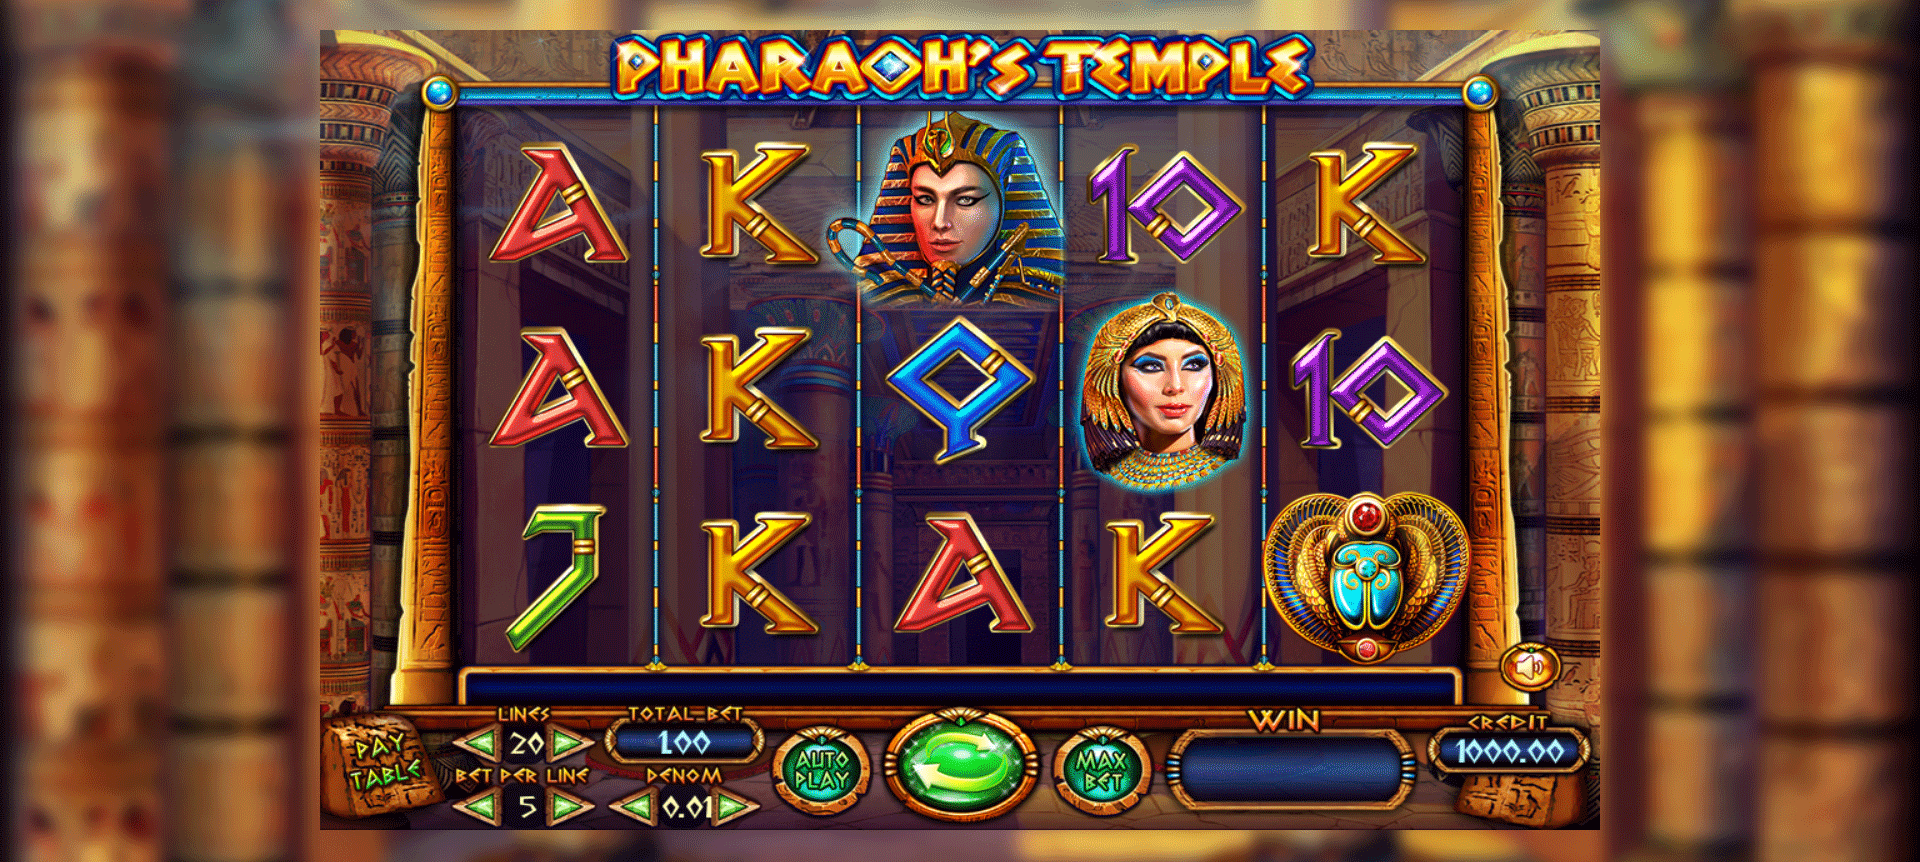 schermata di gioco della slot online pharaoh's temple